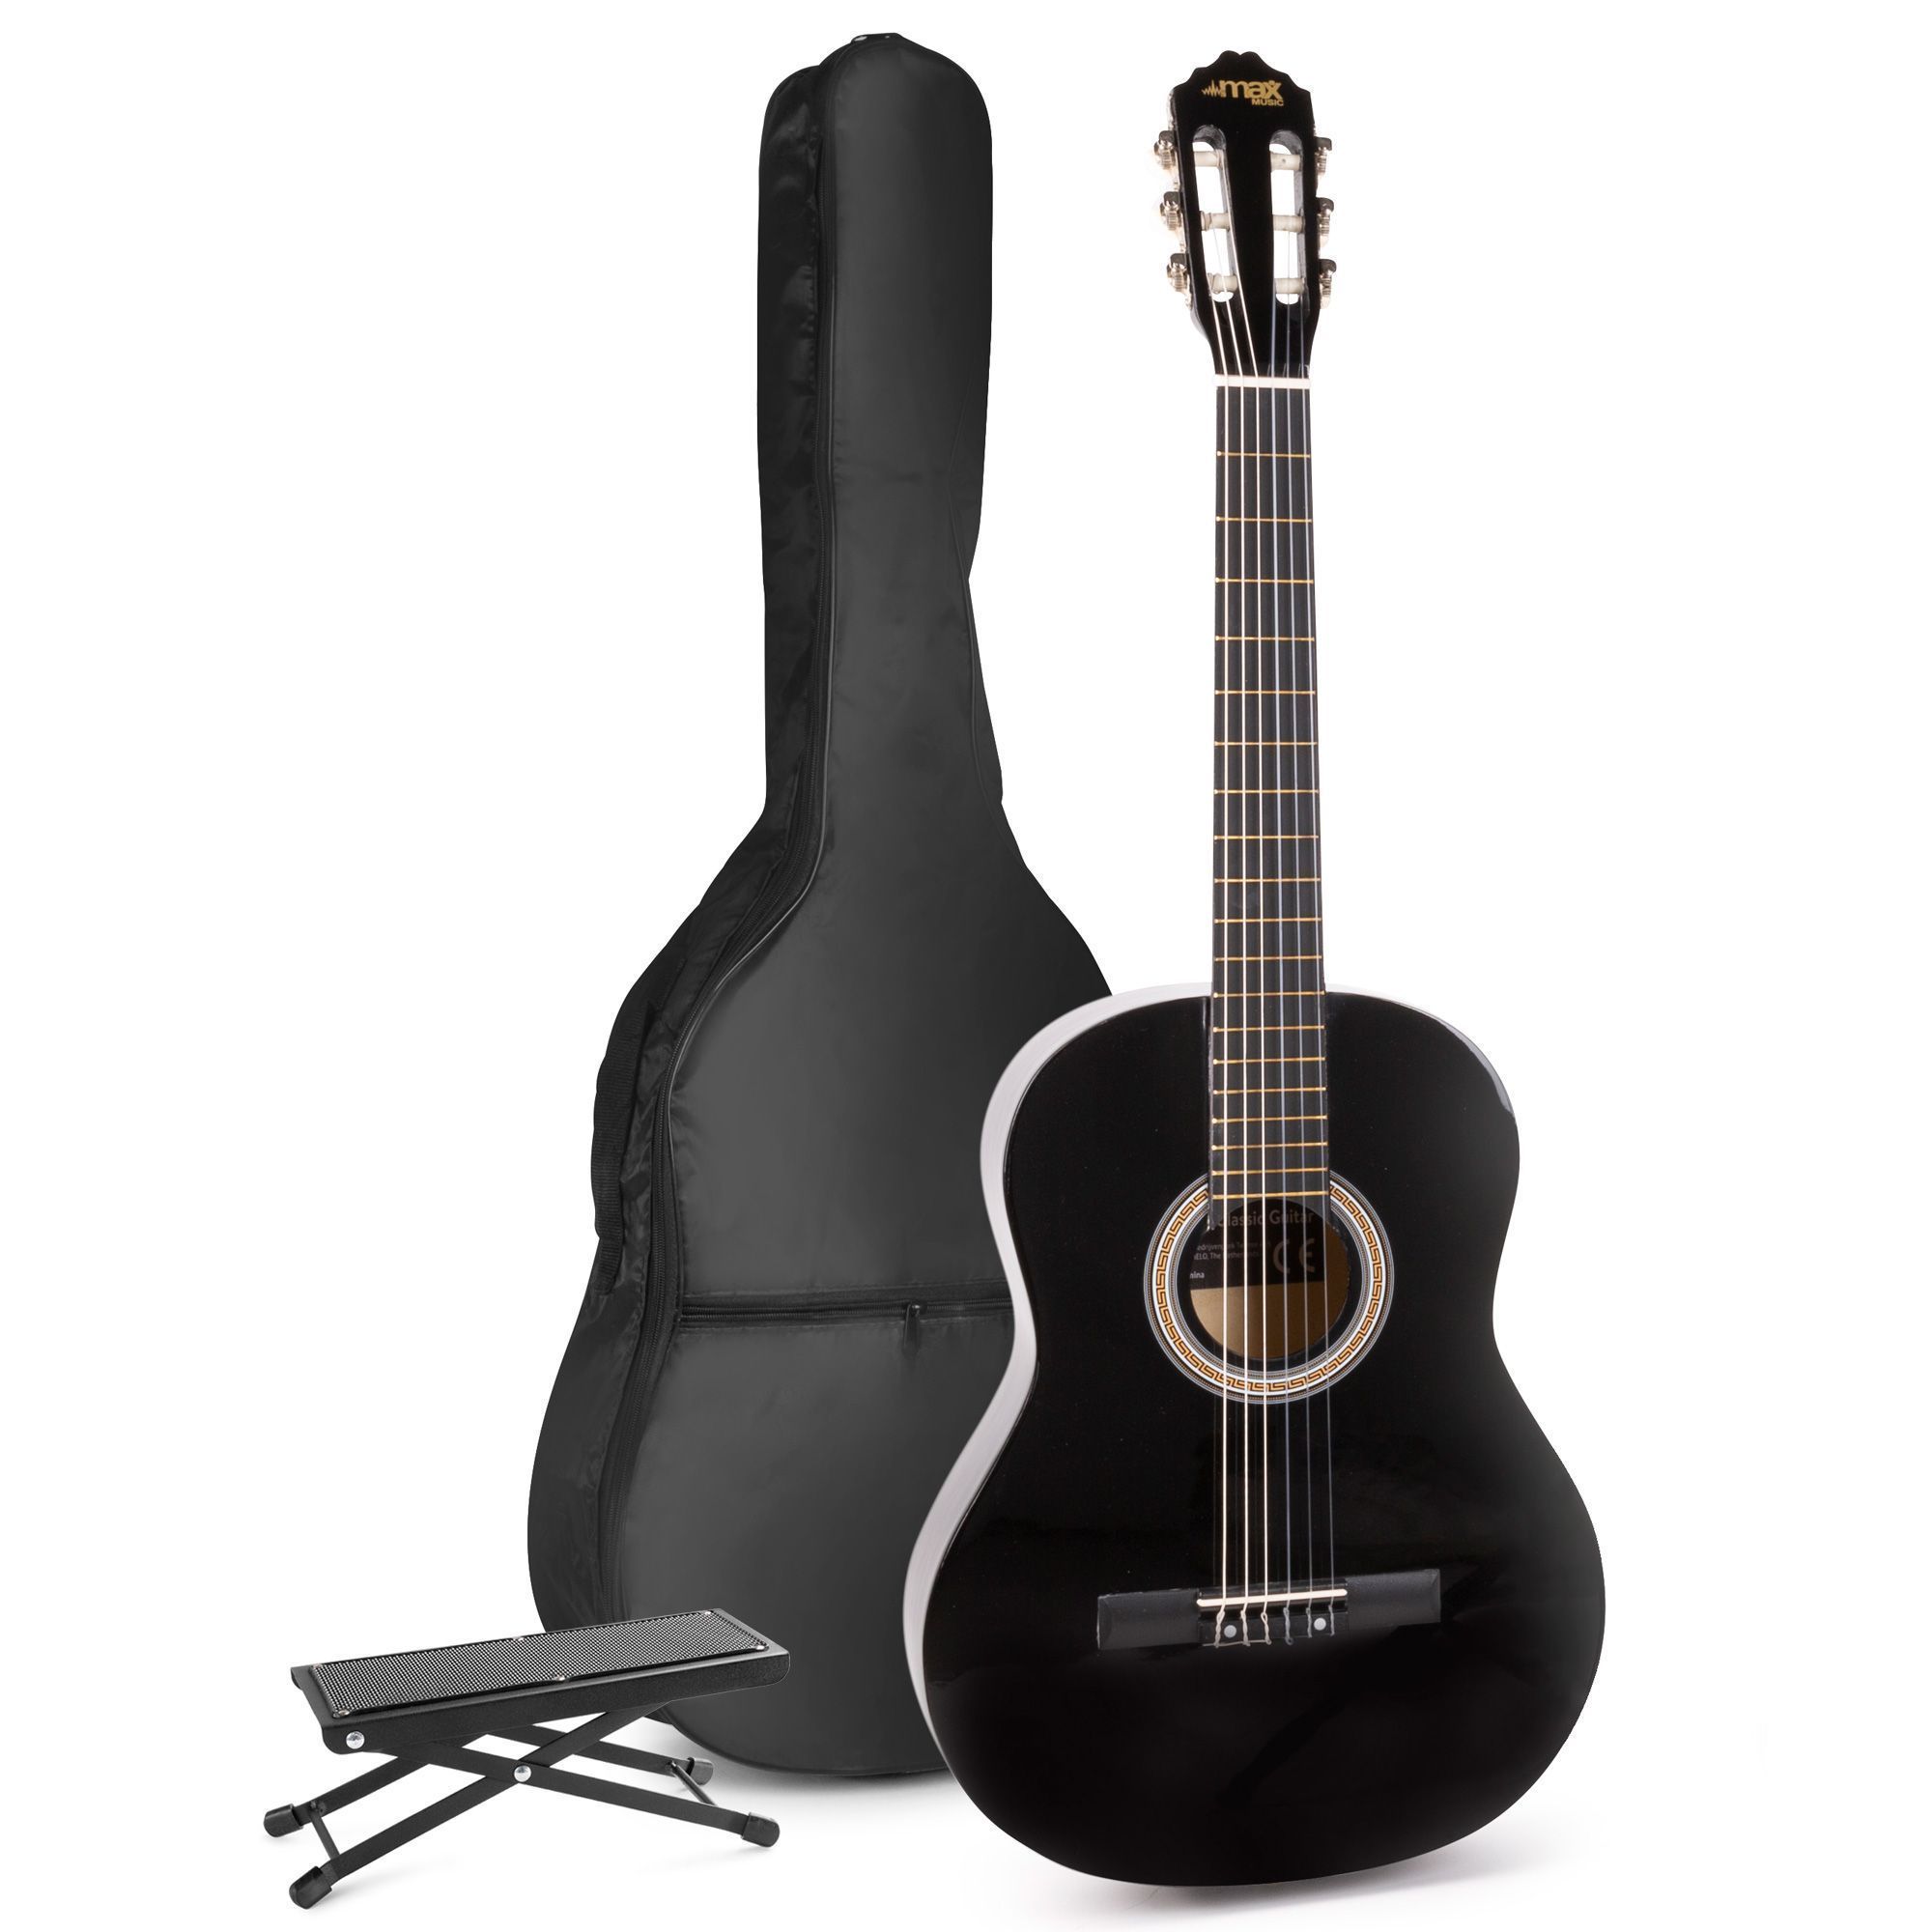 Pupitre guitare trépied pliable et réglable de couleur noir